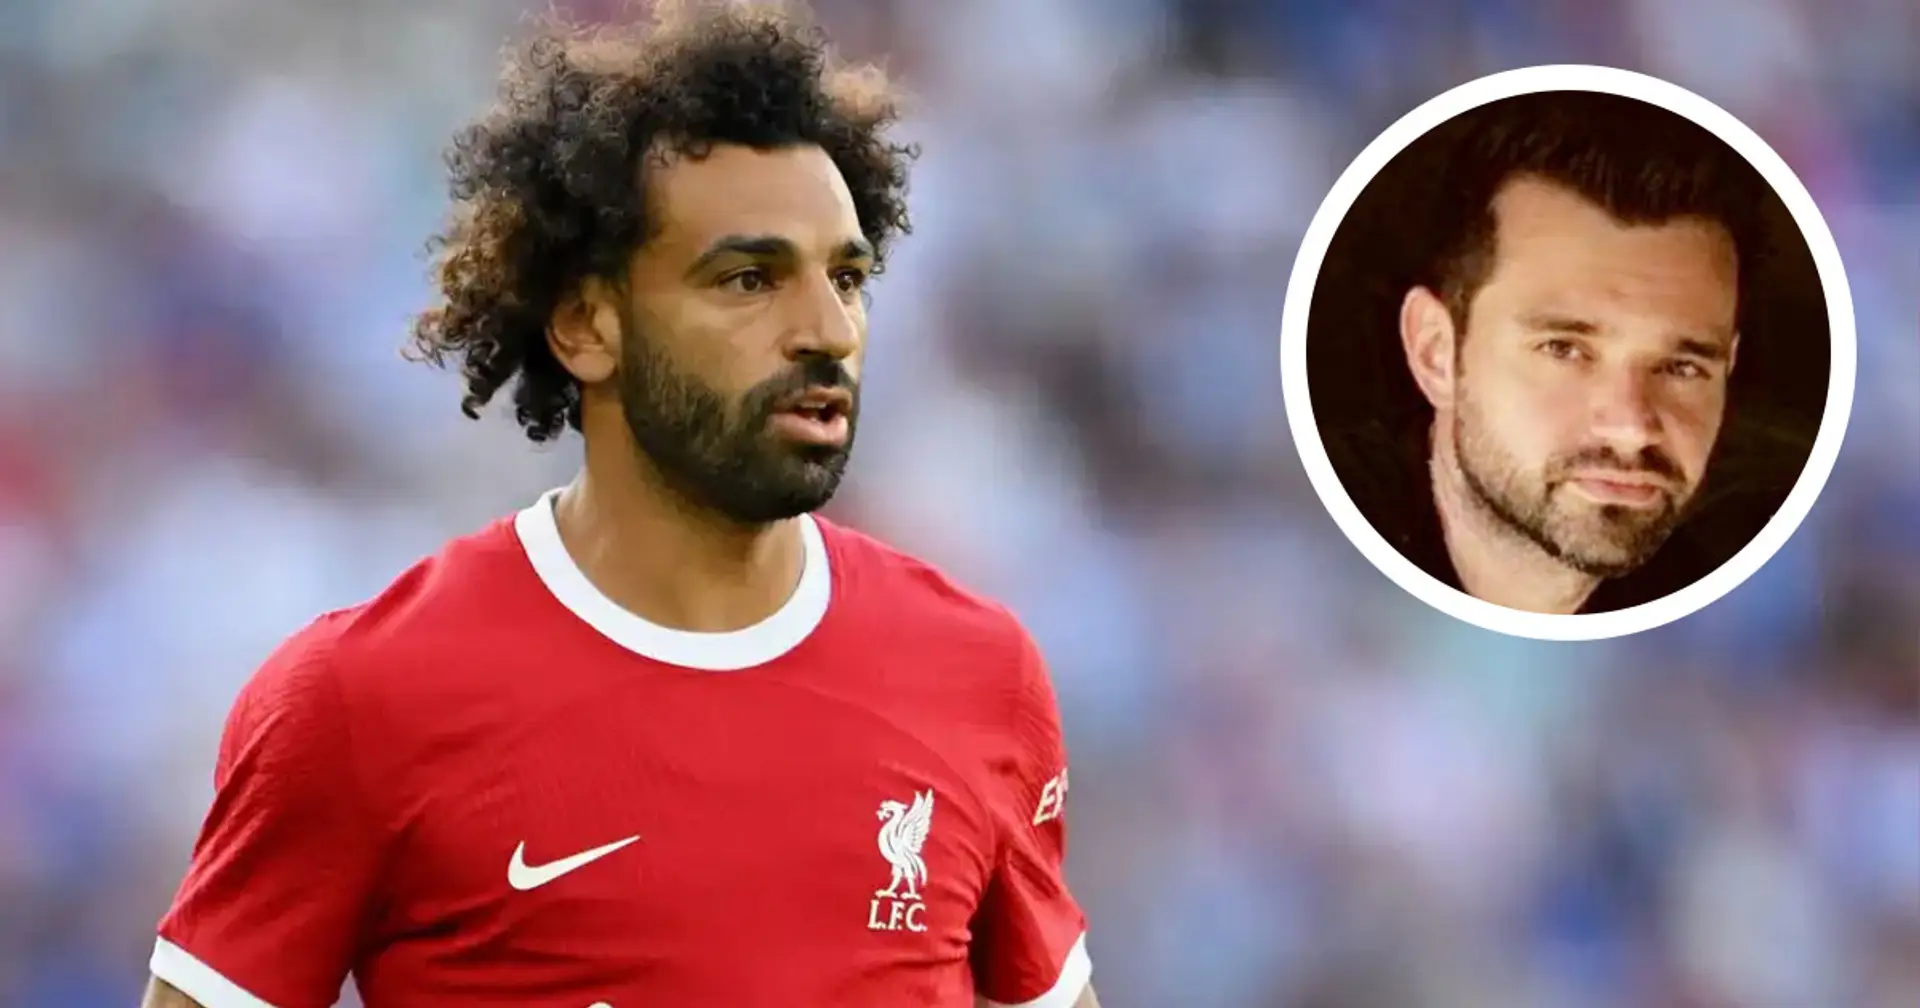 Salah può lasciare il Liverpool questa estate? L'agente rivela la volontà del fuoriclasse egiziano